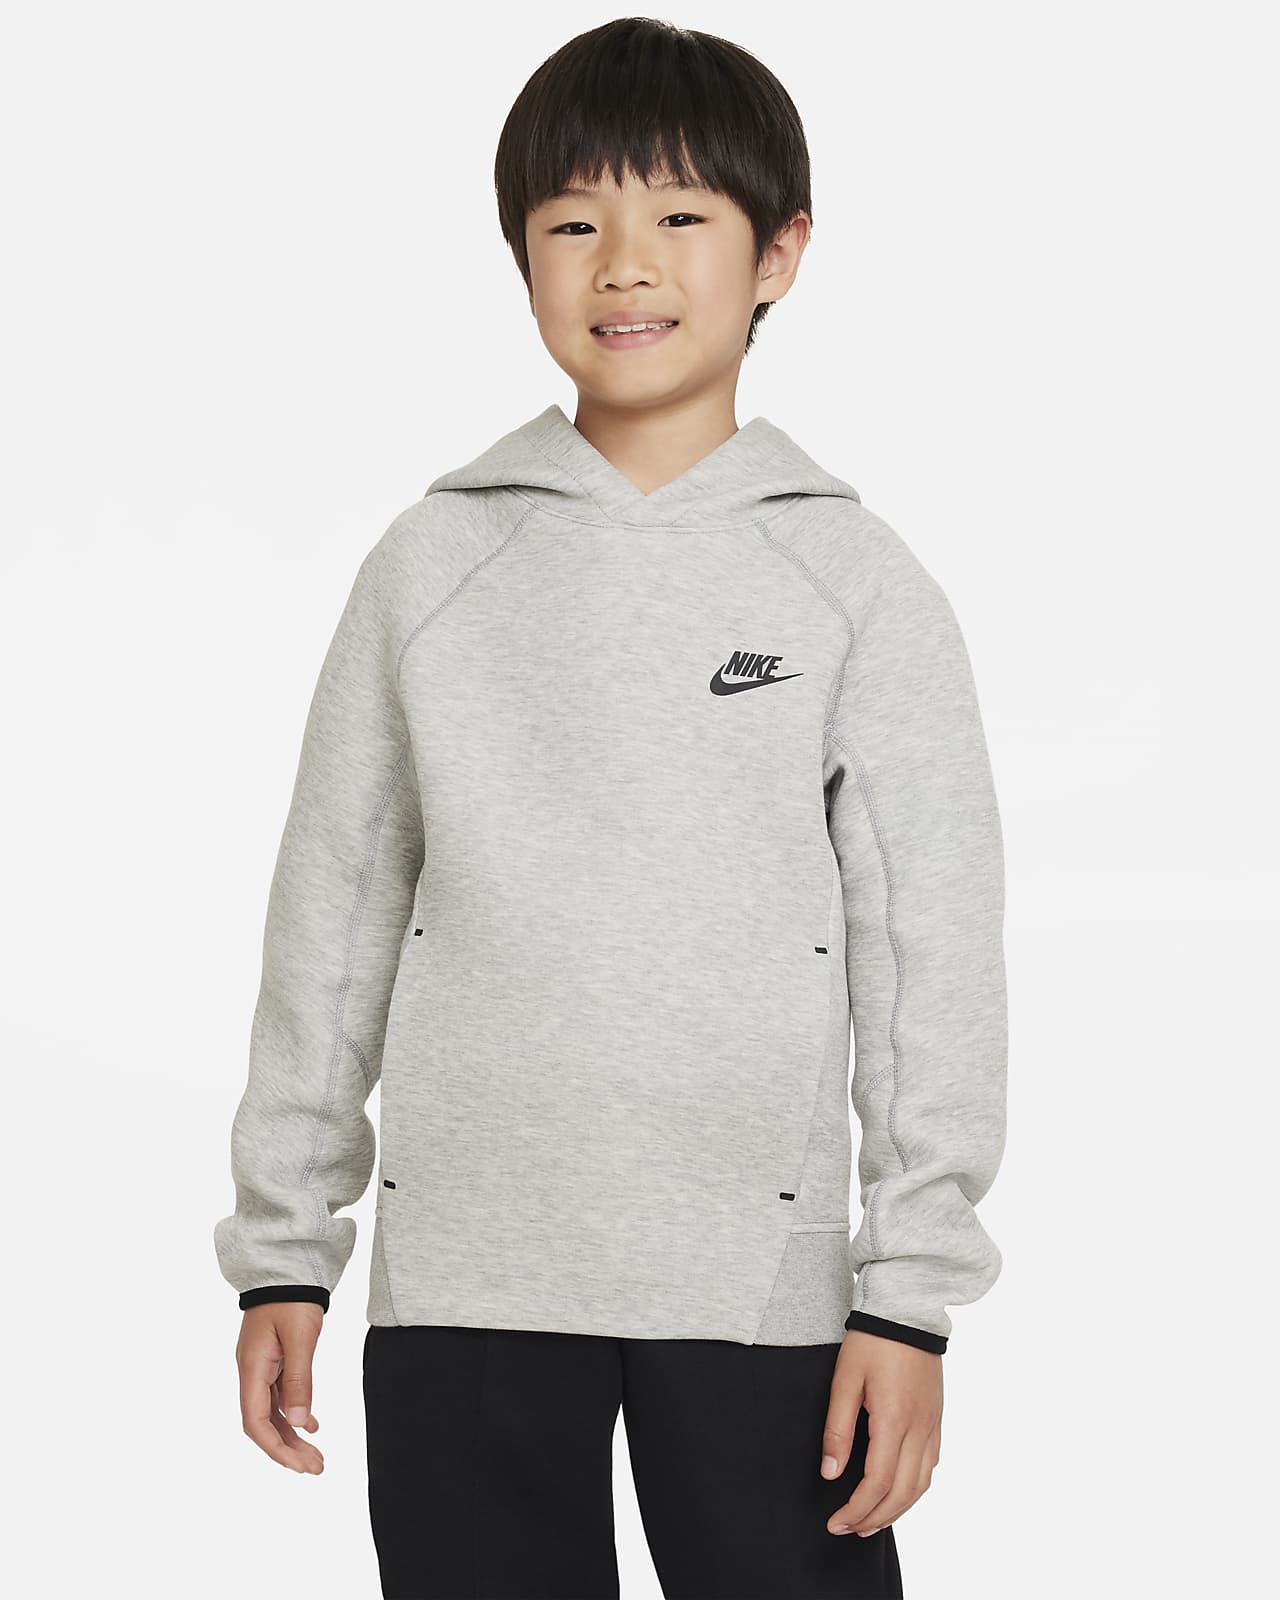 Hoodie pullover Nike Sportswear Tech Fleece Júnior (Rapaz)